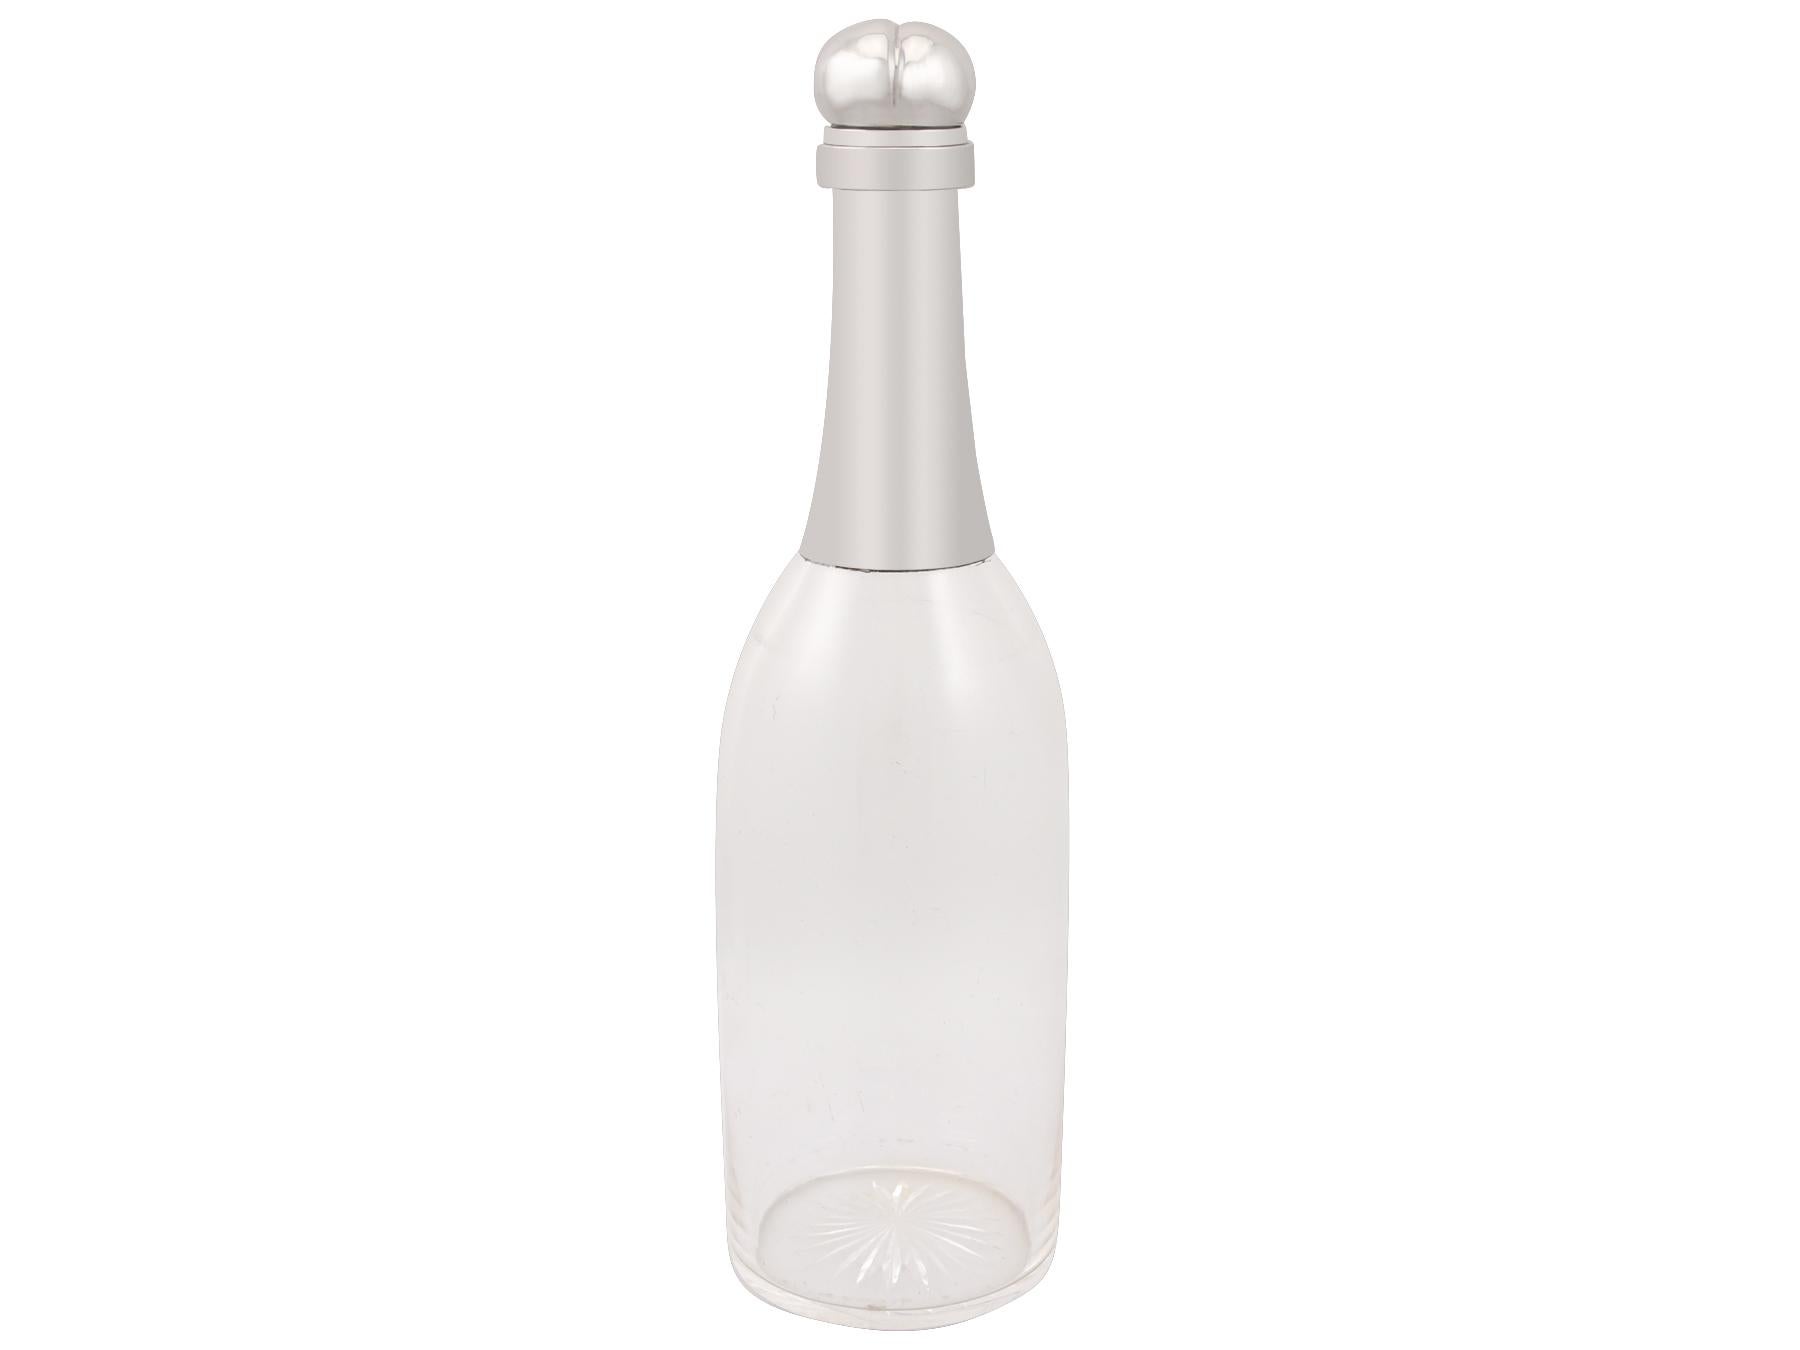 Eine beeindruckende und ungewöhnliche edwardianische antike mundgeblasene und geschliffene Glas, Silber montiert Champagnerflasche Dekanter; eine Ergänzung zu unserer Silber montiert Glas Sammlung.

Diese feine und beeindruckende antike Edwardian